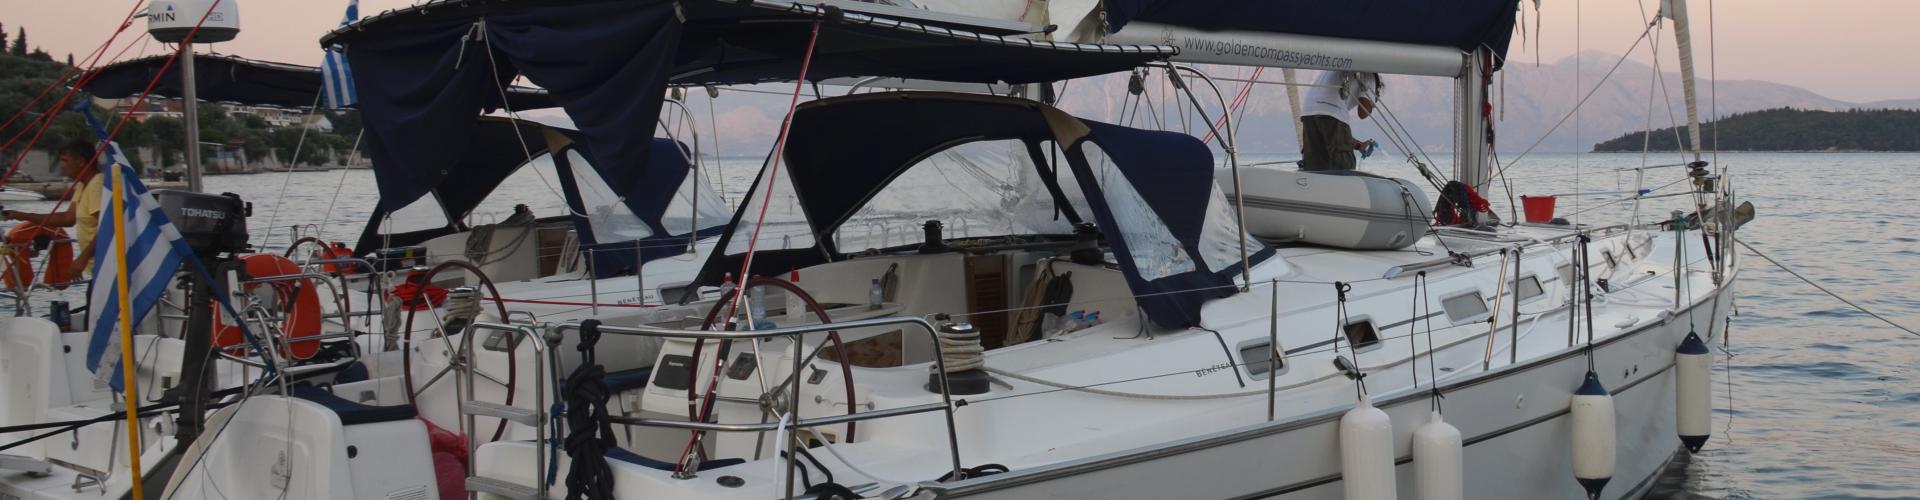 sailboat Cyclades 50.5